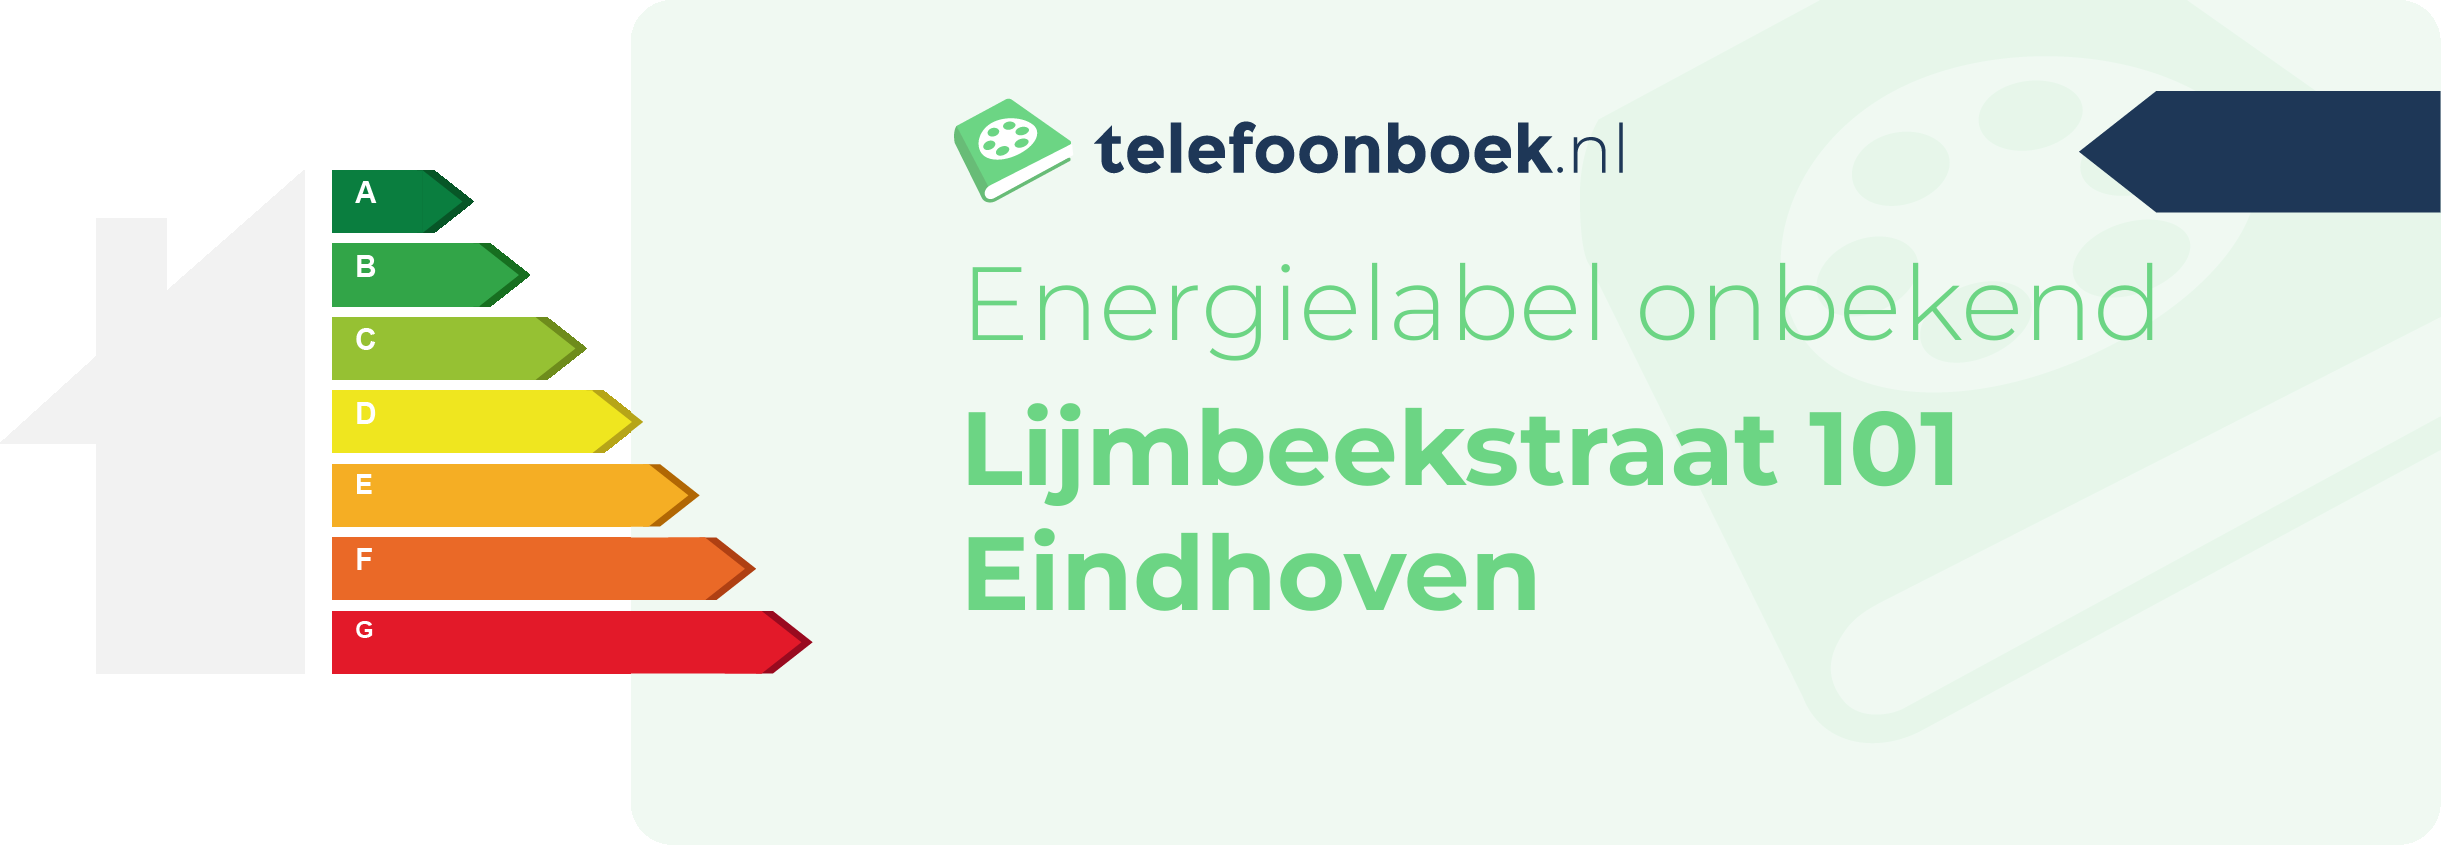 Energielabel Lijmbeekstraat 101 Eindhoven